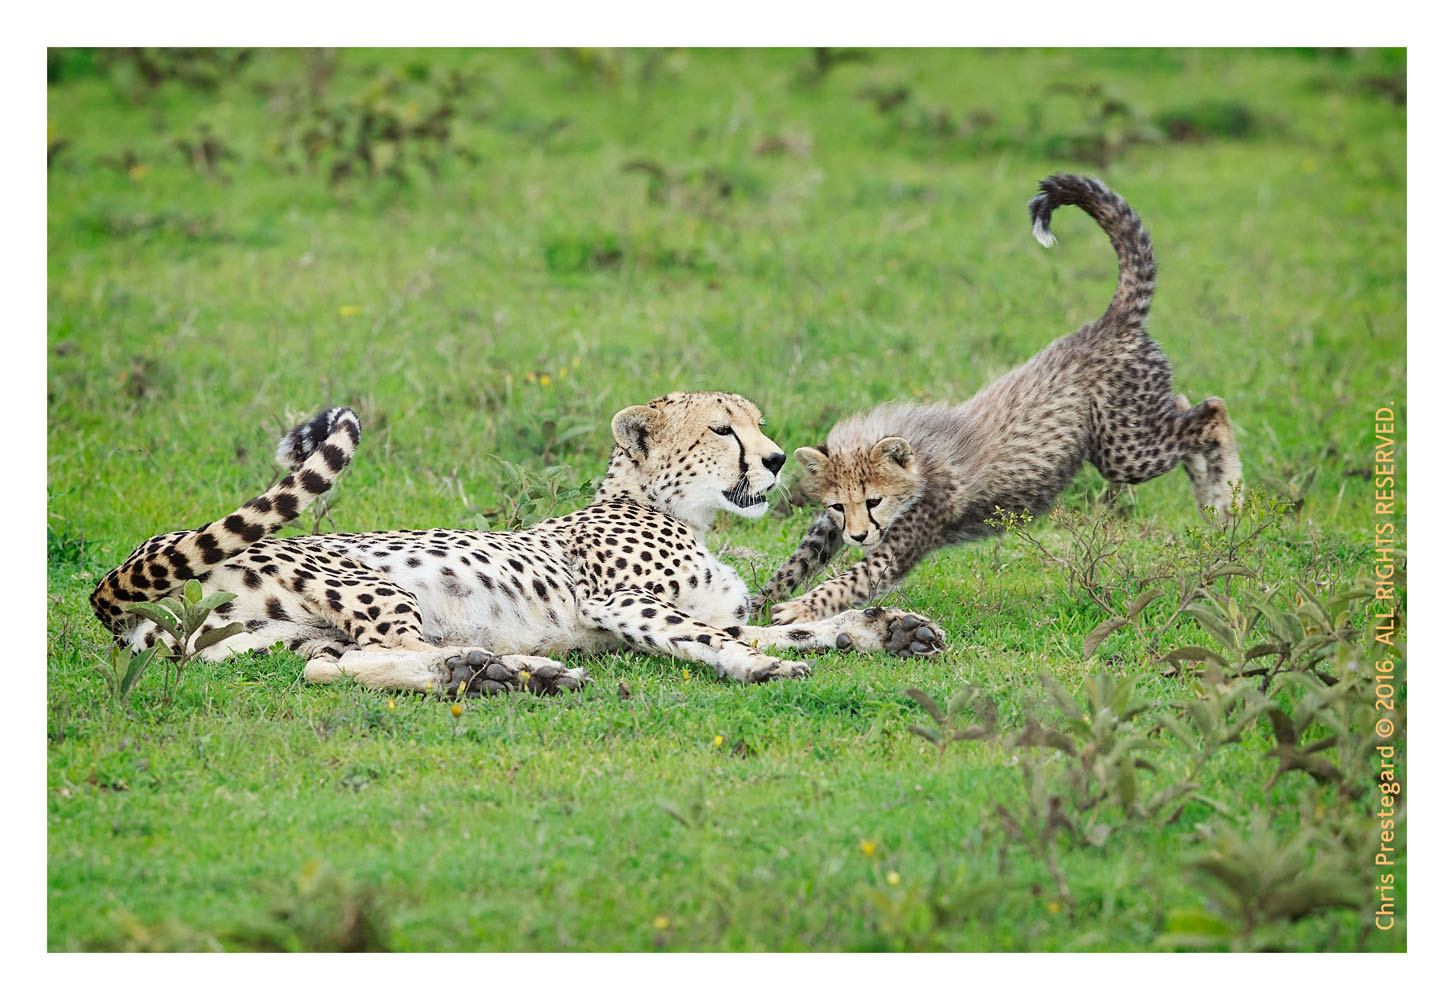 Cheetahs at Ndutu, Tanzania Feb. 2016